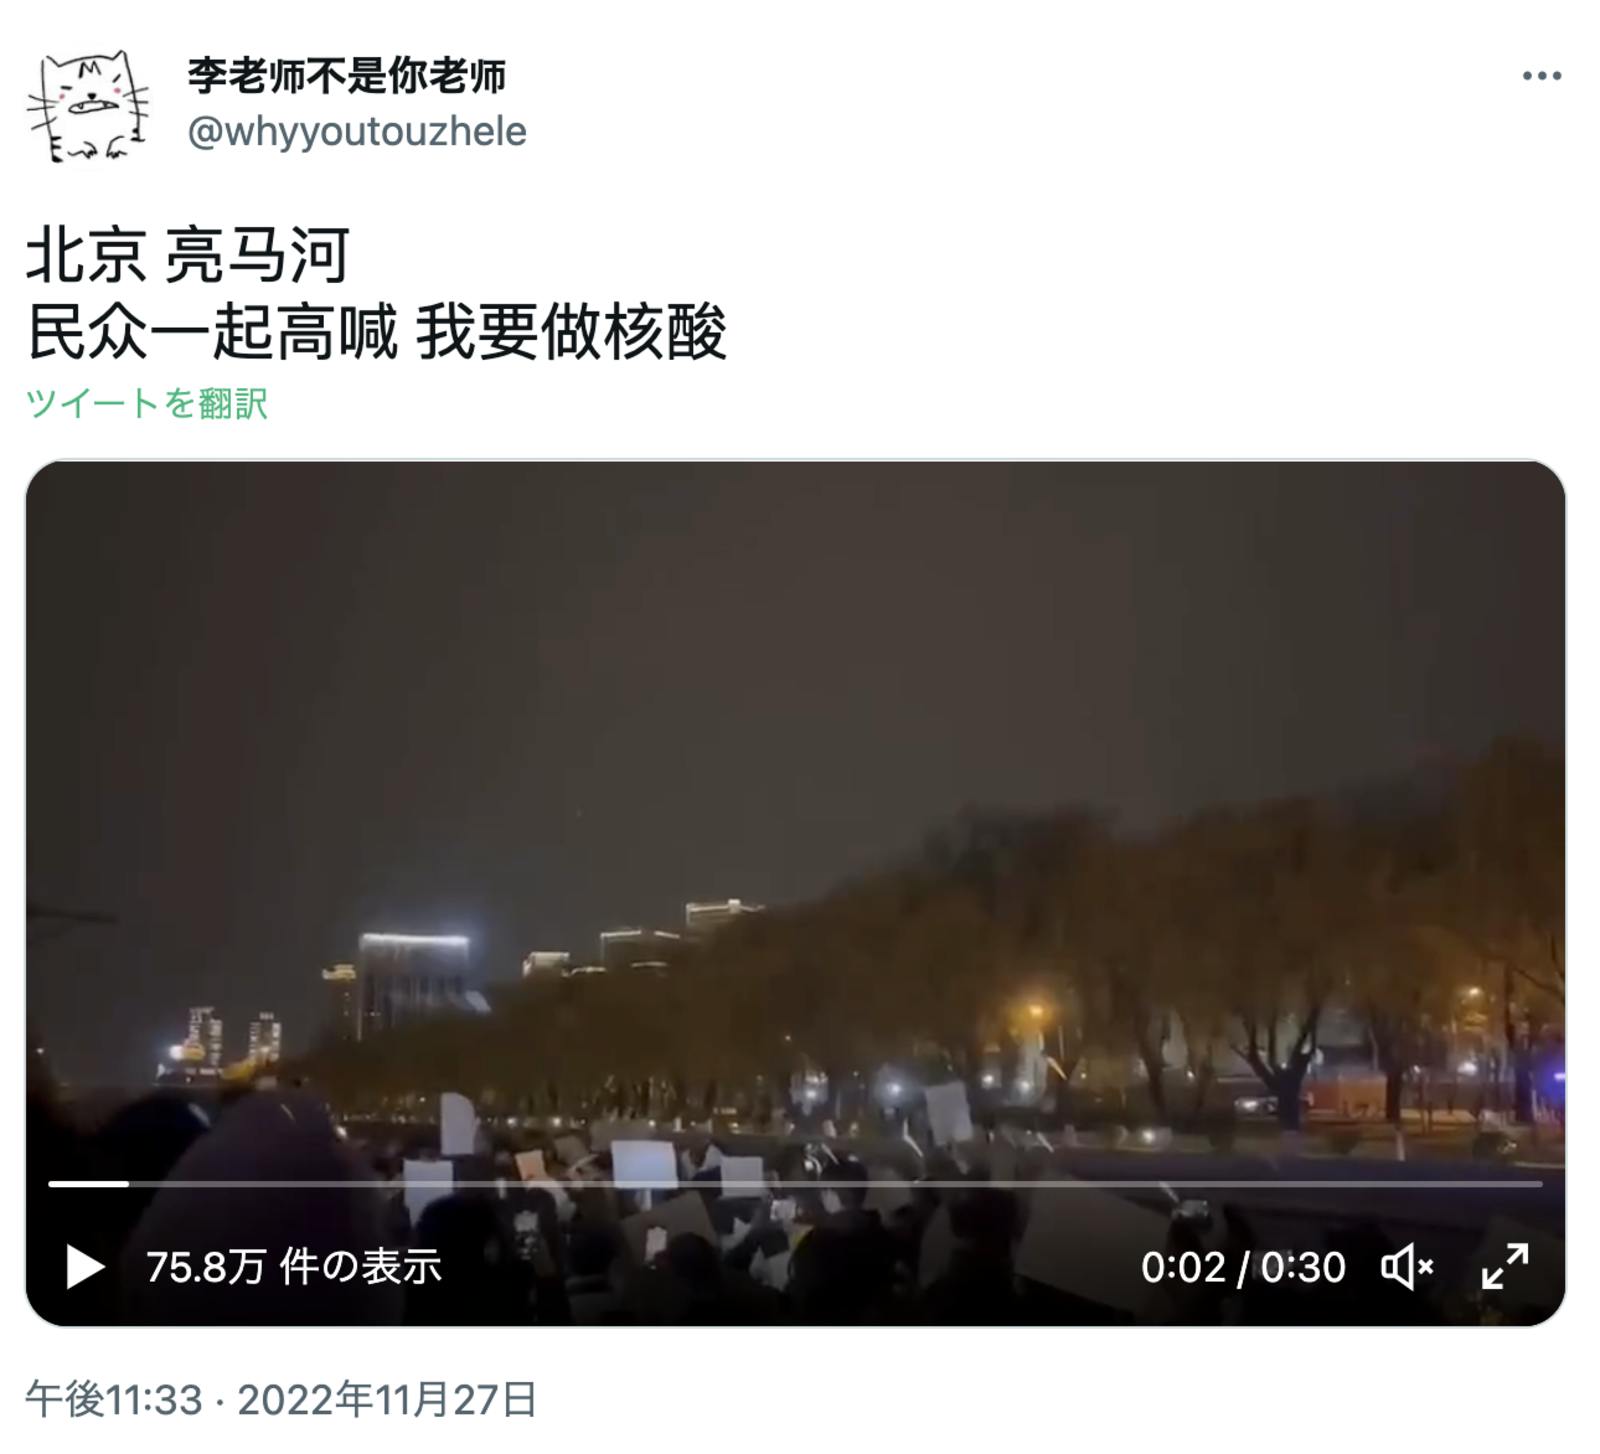 ▲北京市・亮馬河に集結した大学生を中心とした集団の様子